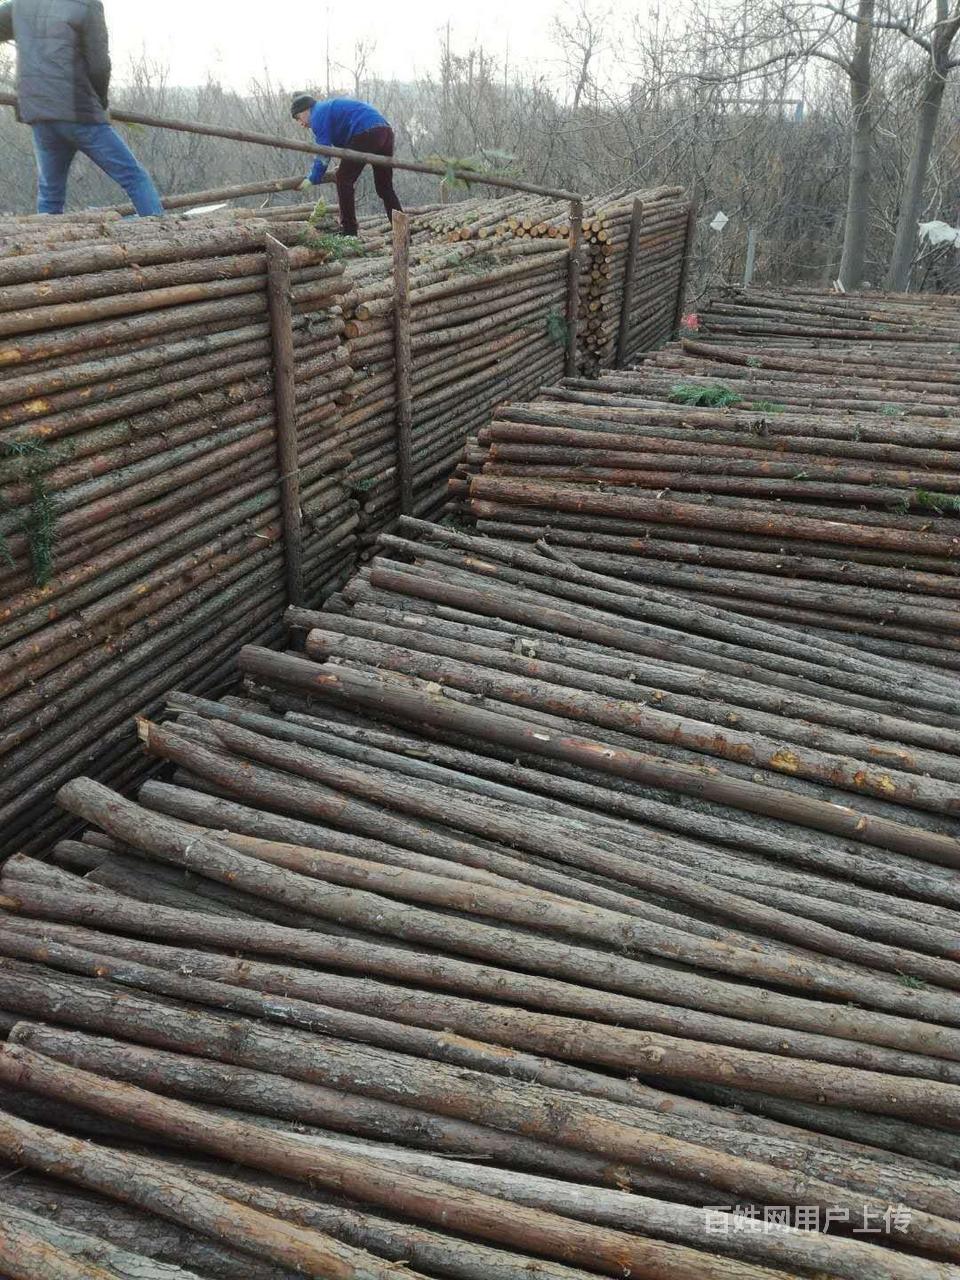 郑州杉木杆批发市场 郑州植树杆批发市场郑州杉木杆